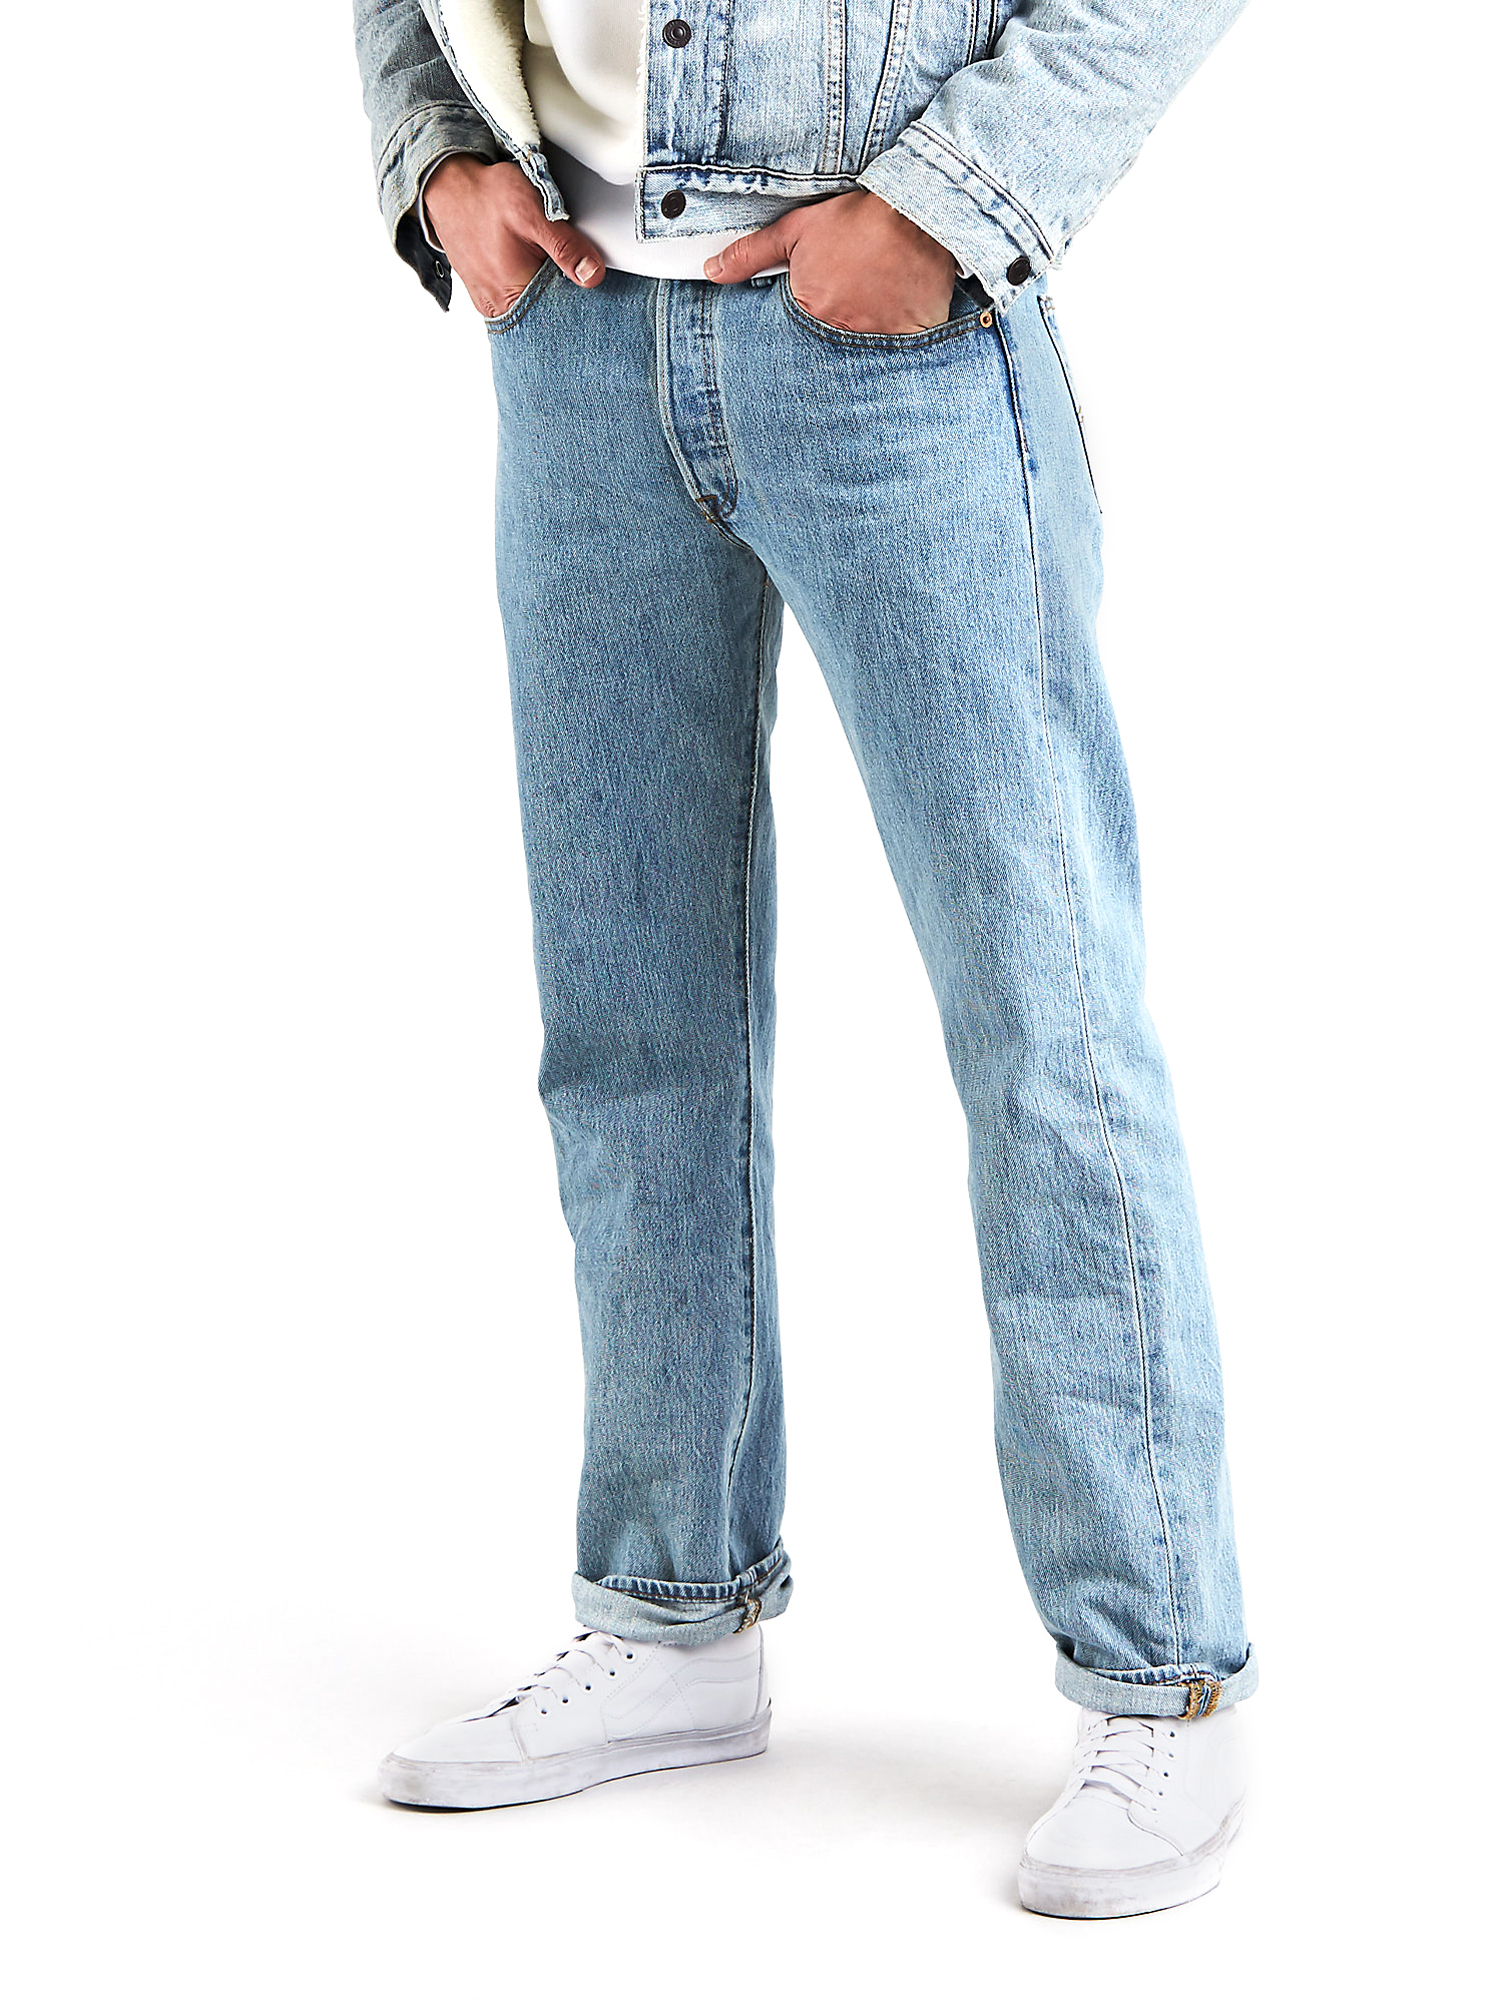 Levi's Men's 501 Original Fit Jeans - image 1 of 10